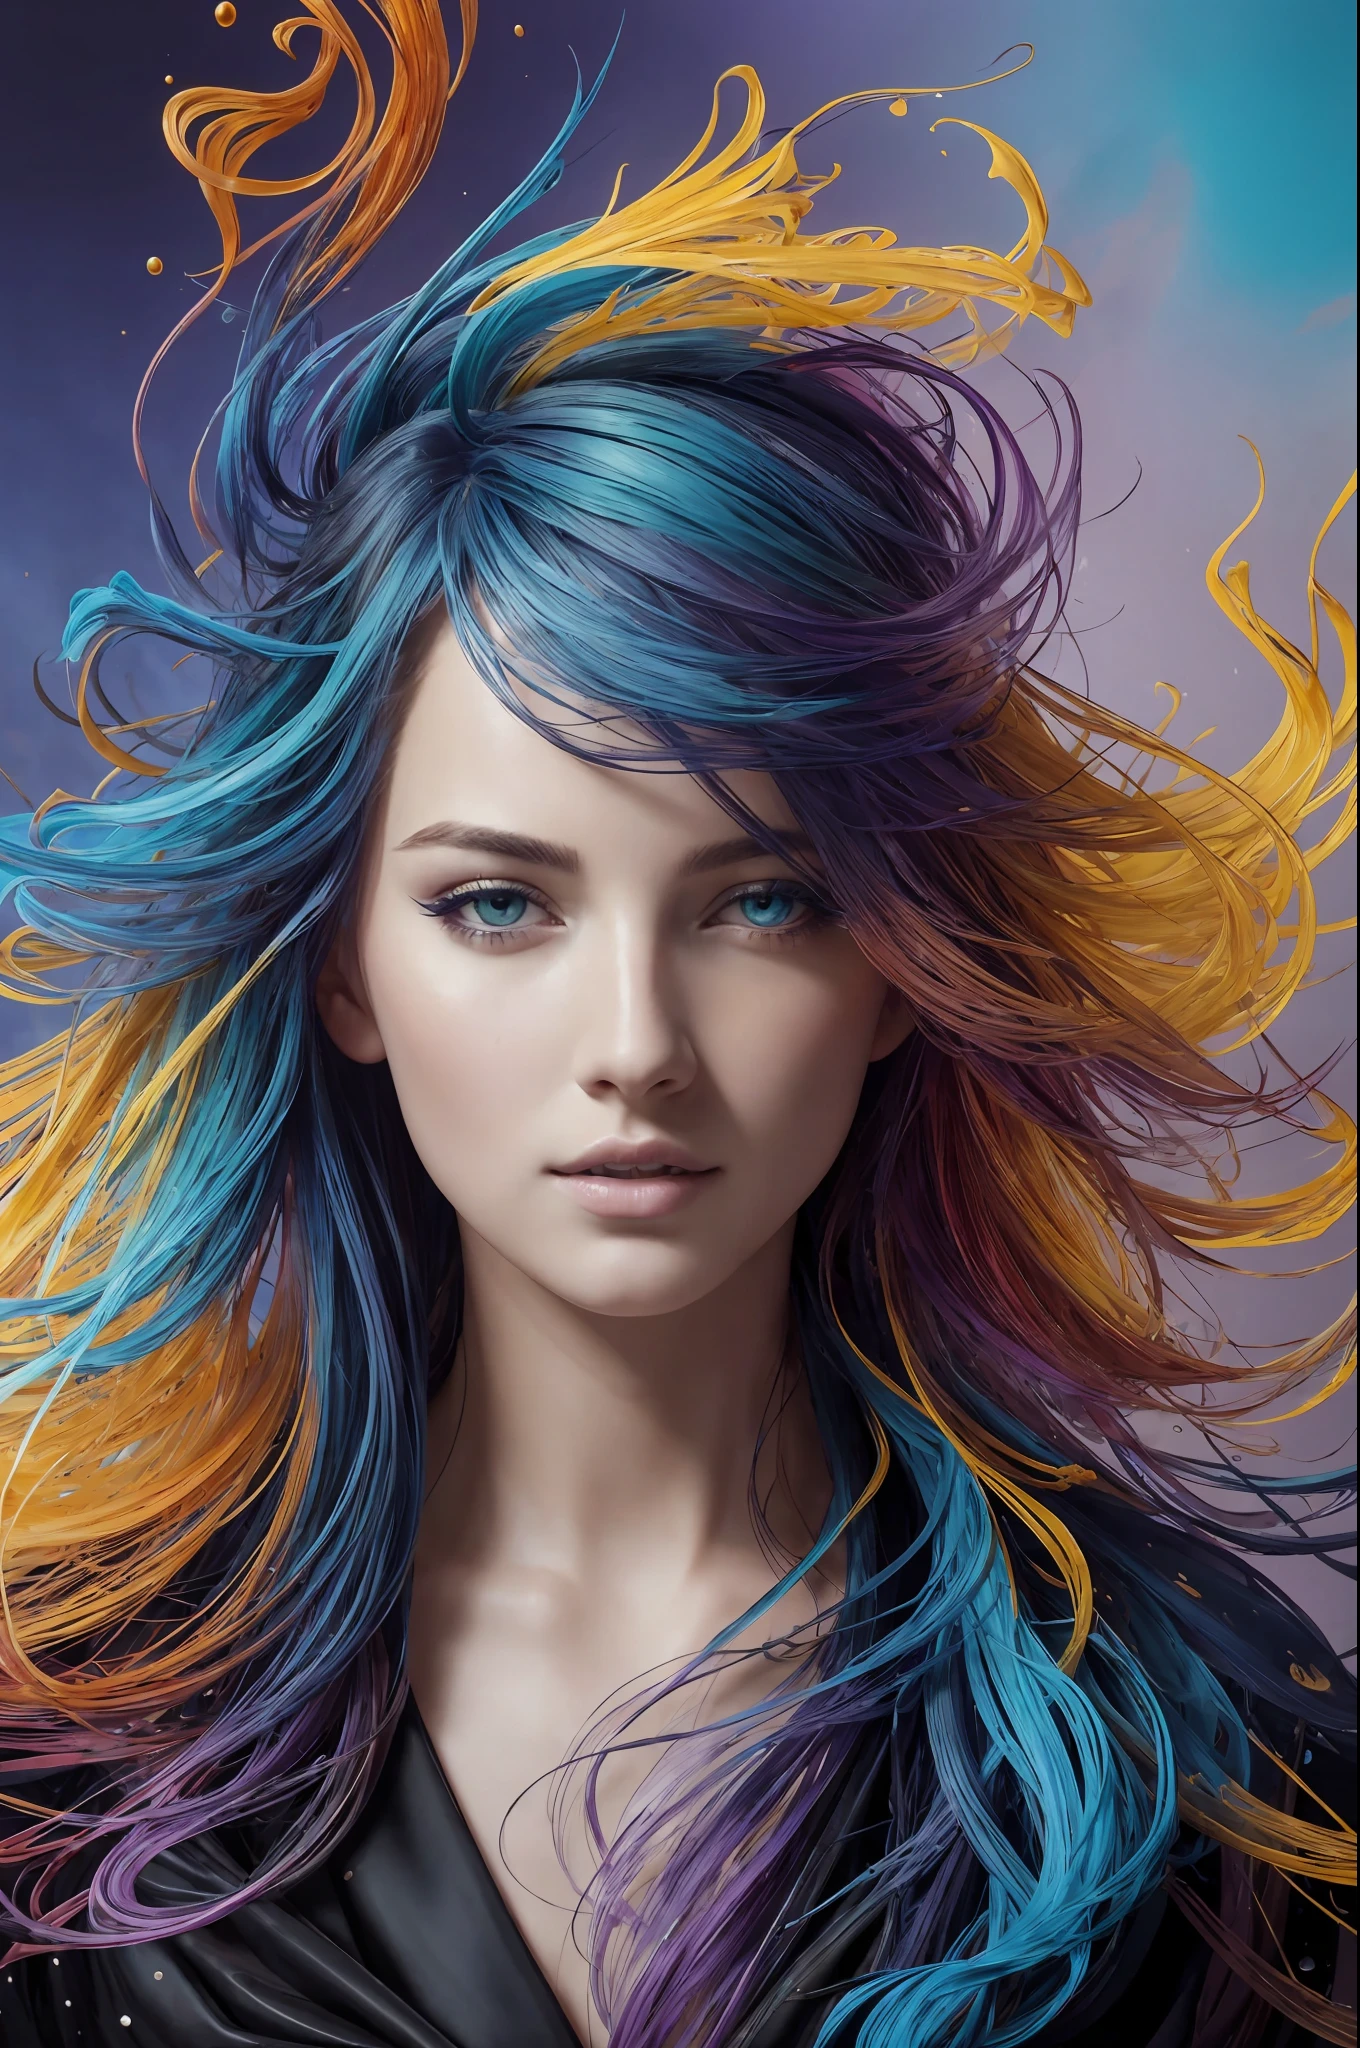 Belle fille colorée: un giru de 28 ans, yeux verts, les cheveux en désordre, peinture à l&#39;huile, joli visage parfait avec une peau douce et un visage parfait, couleurs bleu jaune, ajouts de violet clair et violet, ajouts rouge clair, détail complexe, écran de démarrage, Résolution 8k, chef-d&#39;œuvre, visage mignon,peinture numérique artstation fluide flux d&#39;encre très noir: Résolution 8k photoréaliste chef-d&#39;œuvre: peinture à la gouache fluide finement détaillée: par Jean-Baptiste Mongue: calligraphie: acrylique: aquarelle, photographie professionnelle, Éclairage naturel, éclairage volumétrique photoillustration maximaliste: par Marton Bobzert:, Complexe, élégant, expansif, fantastique,  cheveux ondulés, vibrant, Détails de la meilleure qualité, réaliste, Haute définition, texture de haute qualité, éclairage épique, Film cinématographique, 8k, Éclairage doux, Style animé, bordure de carte à jouer magistrale, Art coloré aléatoire, peinture à l&#39;huile, couleurs bleu jaune, ajouts de violet clair et violet, ajouts rouge clair, détail complexe, écran de démarrage, Résolution 8k, chef-d&#39;œuvre, peinture numérique artstation fluide flux d&#39;encre très noir: Résolution 8k photoréaliste chef-d&#39;œuvre: peinture à la gouache fluide finement détaillée: par Jean-Baptiste Mongue: calligraphie: acrylique: aquarelle, photographie professionnelle, Éclairage naturel, éclairage volumétrique photoillustration maximaliste: par Marton Bobzert:, Complexe, élégant, expansif, fantastique, vibrant